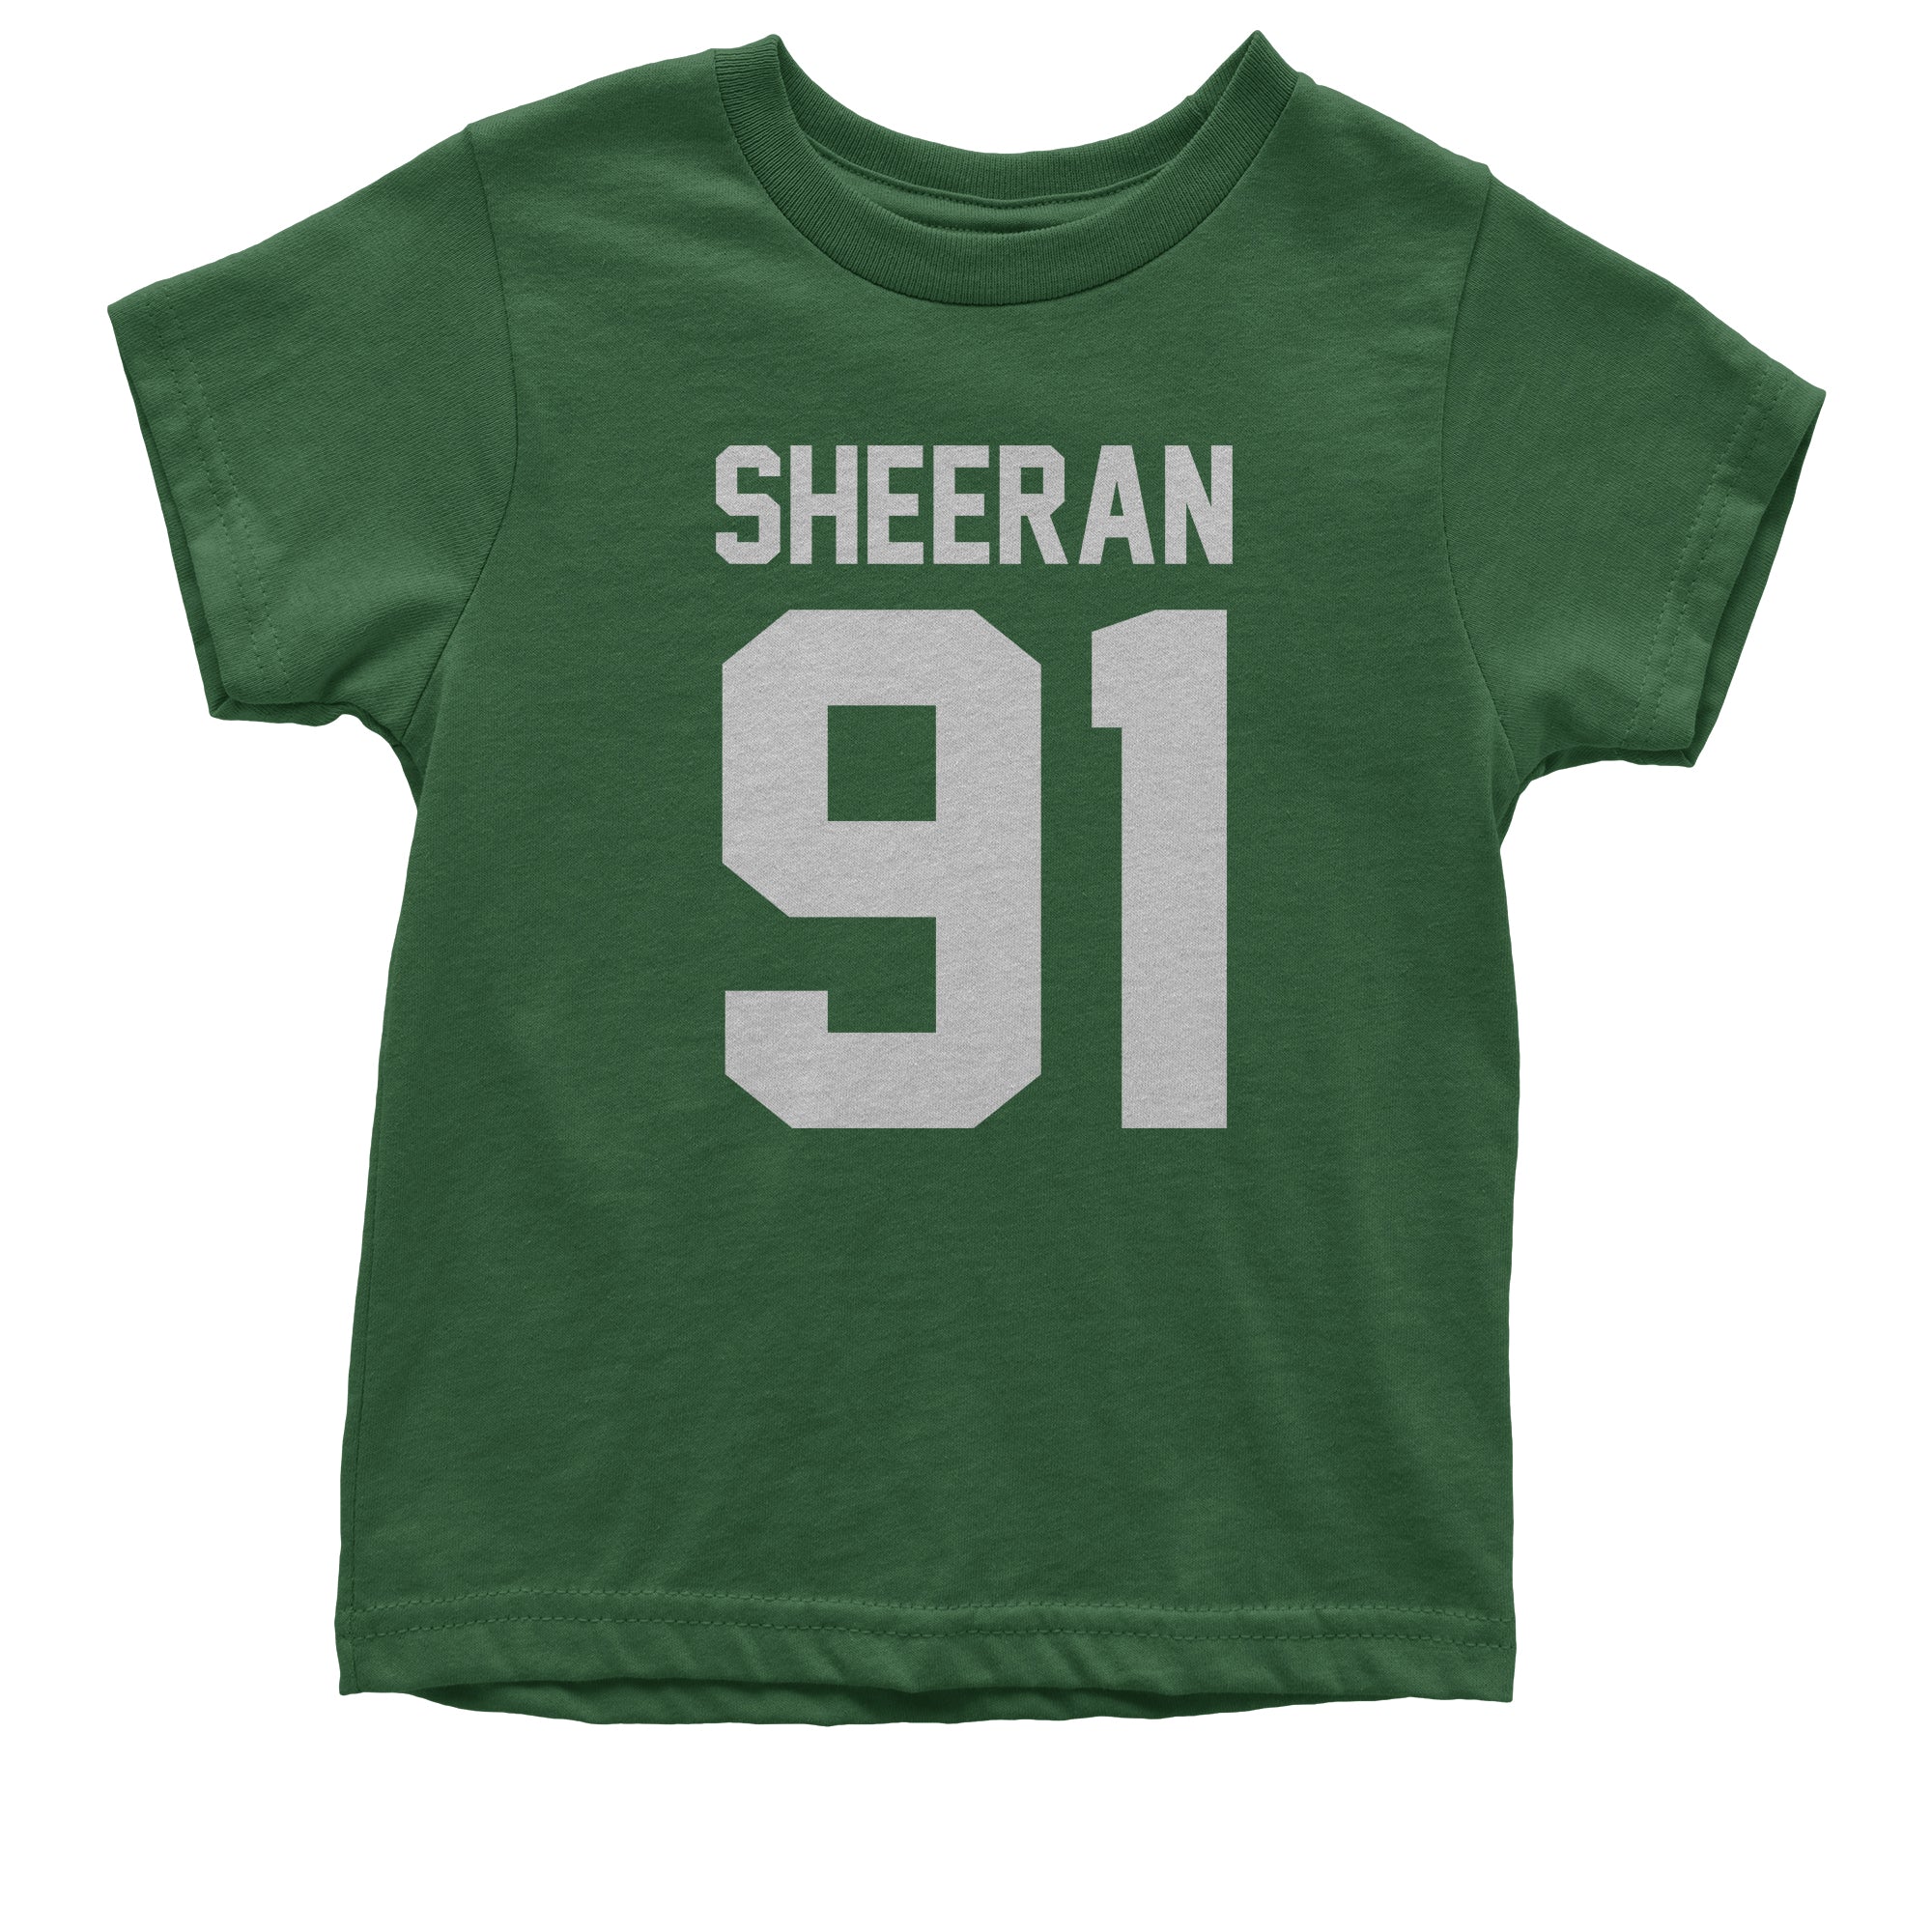 Sheeran 91 Jersey Style Birthday Year Kid's T-Shirt